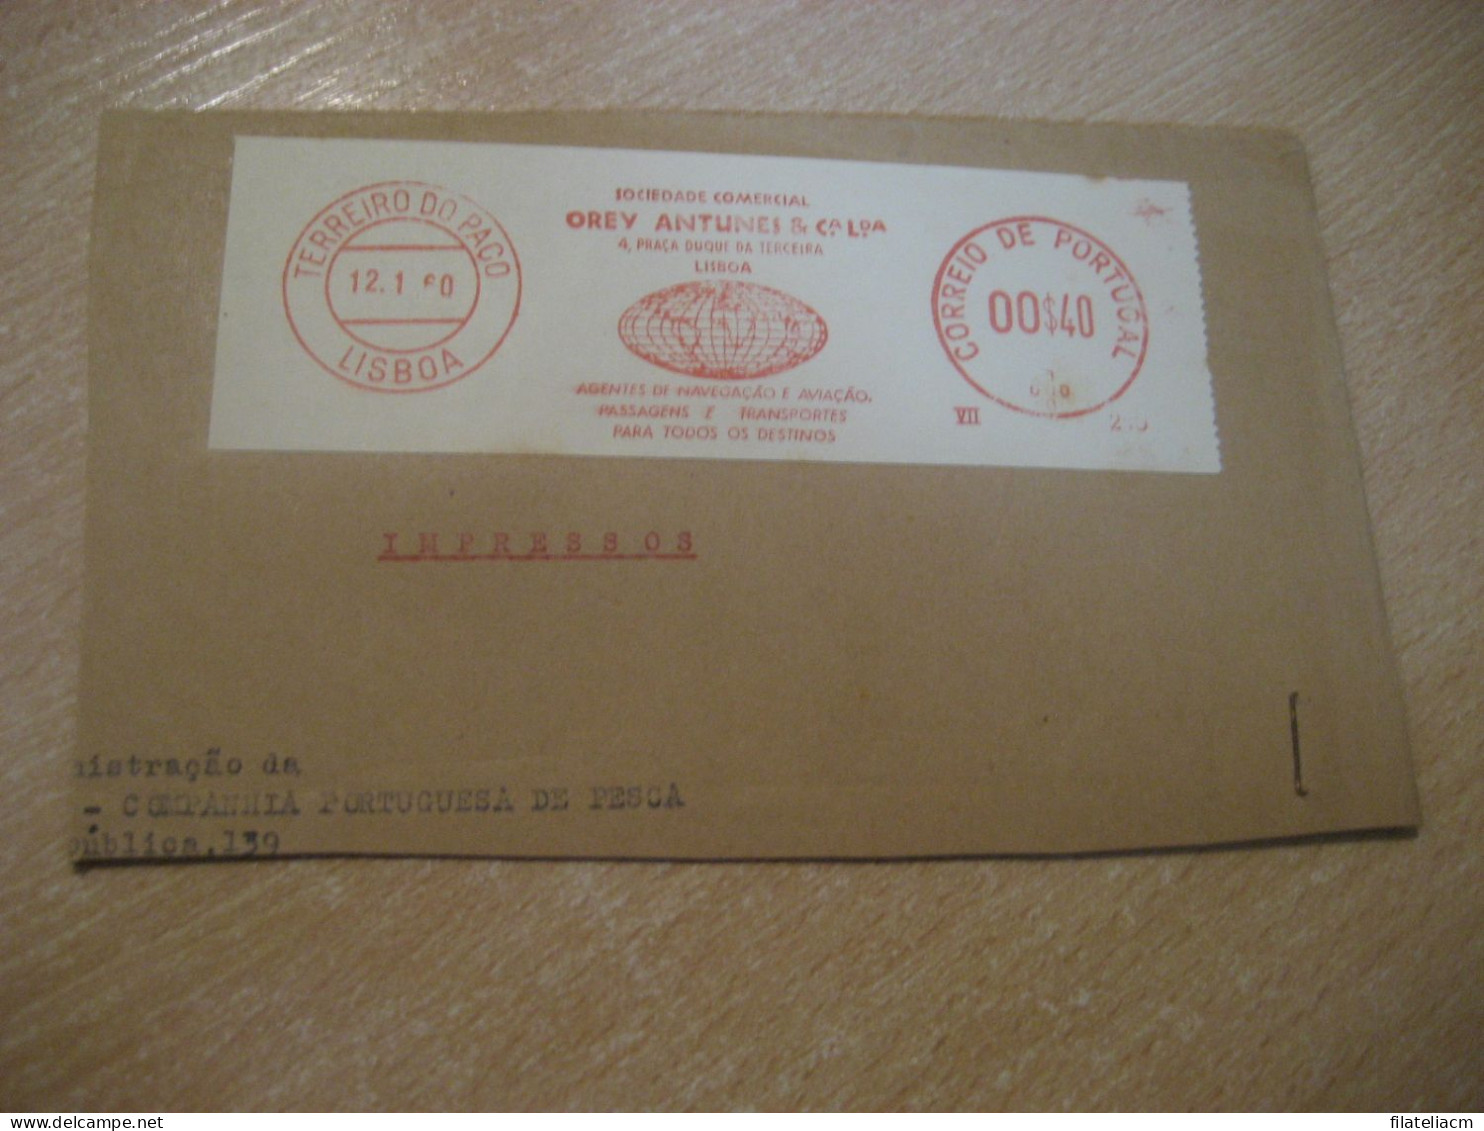 LISBOA 1960 Orey Antunes Agentes De Navegaçao E Aviaçao Meter Mail Cancel Cut Cuted Cover PORTUGAL - Briefe U. Dokumente